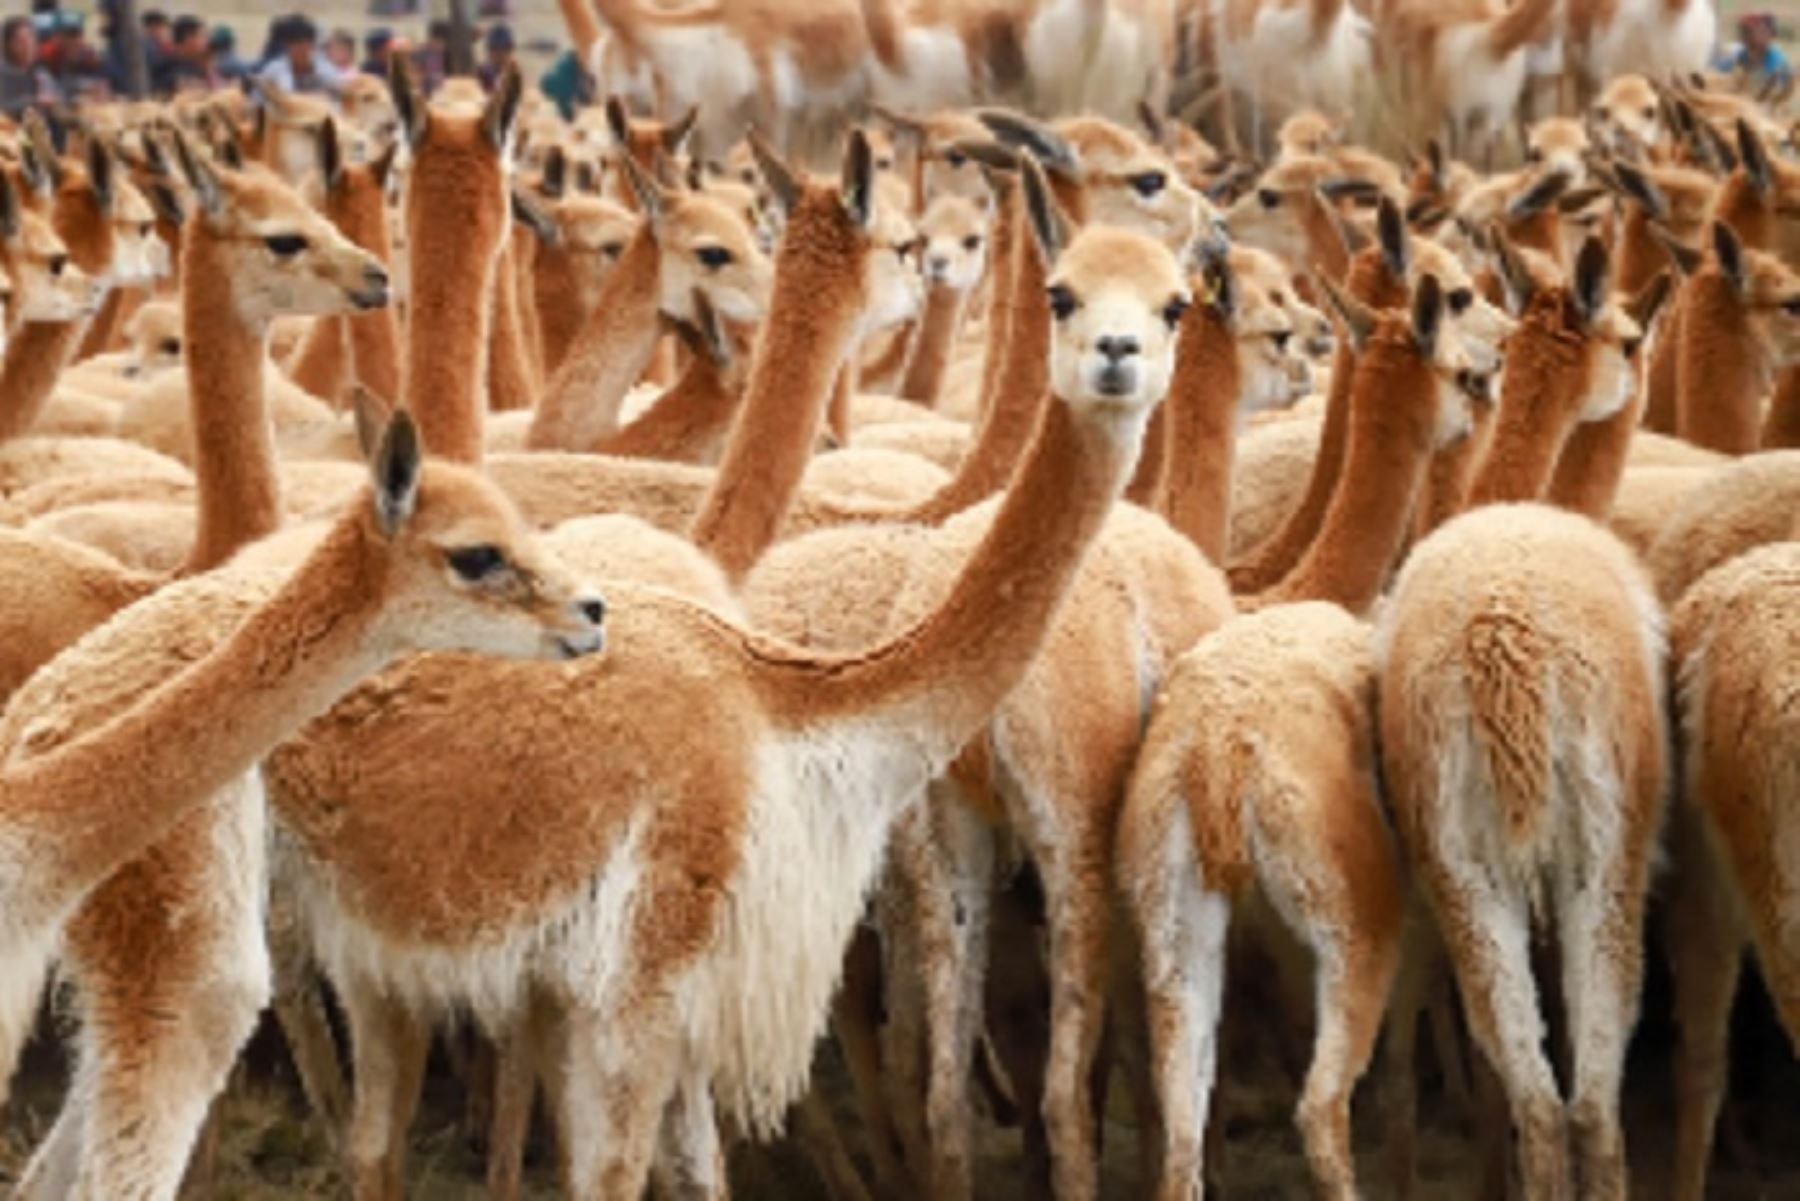 Según la denuncia, alrededor de 200 vicuñas (Vicugna vicugna) fueron asesinadas y despojadas de sus pieles a manos de cazadores furtivos que aprovecharon la ausencia de vigilancia en Ayacucho y por el estado de emergencia.